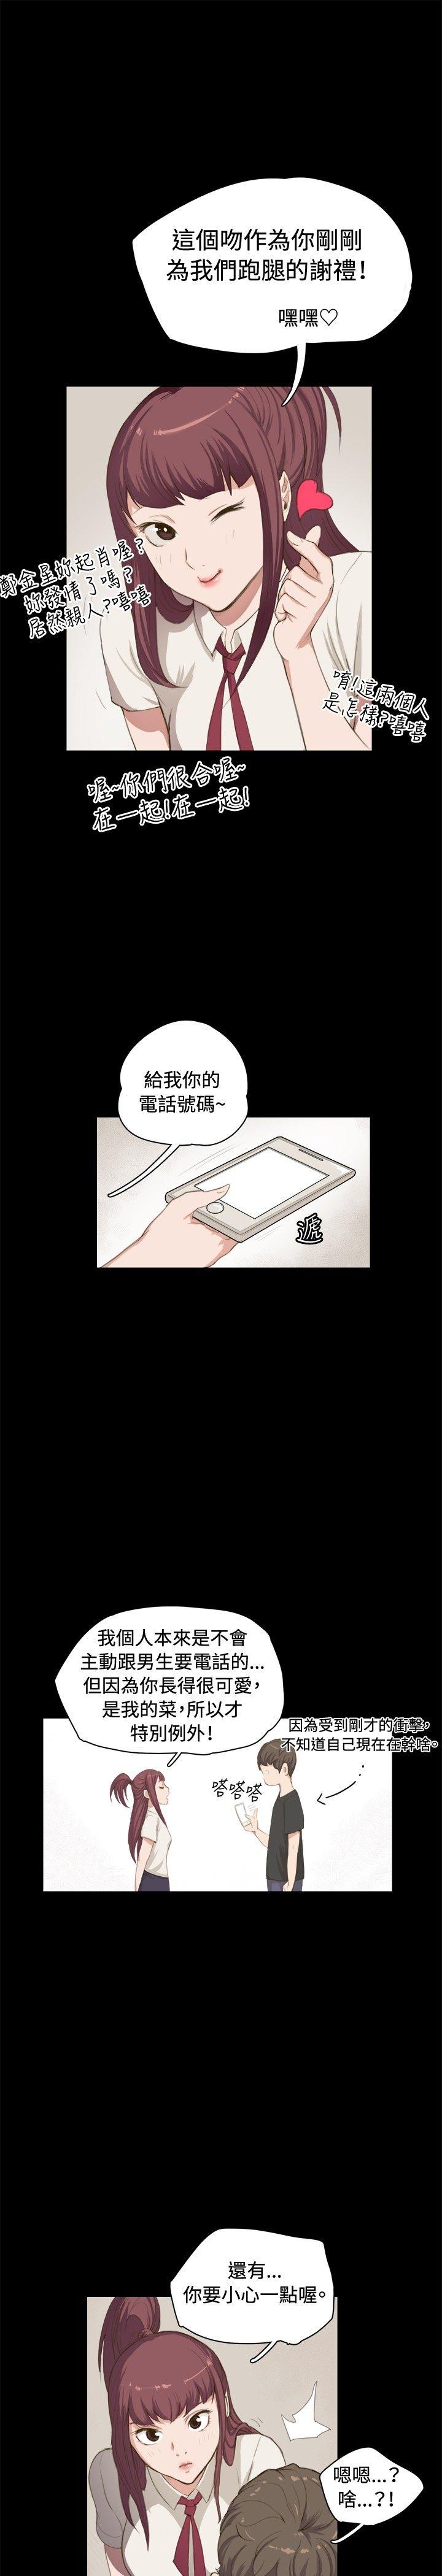 韩国污漫画 深夜便利店 第1话 15